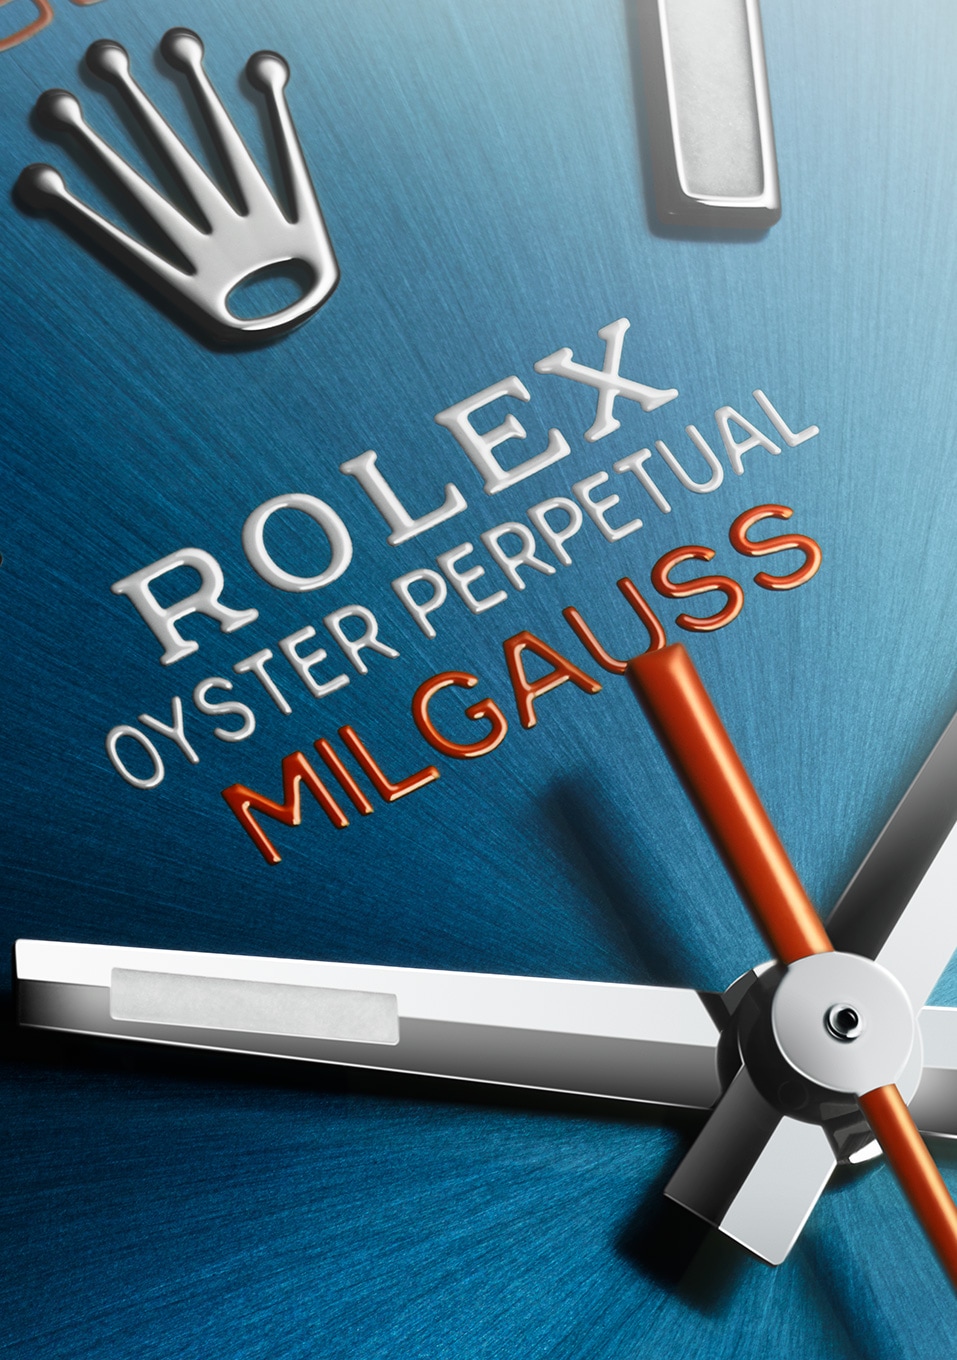 Rolex Datejust 36mm Steel & Everose Gold Slate Index Dial Oyster Bracelet